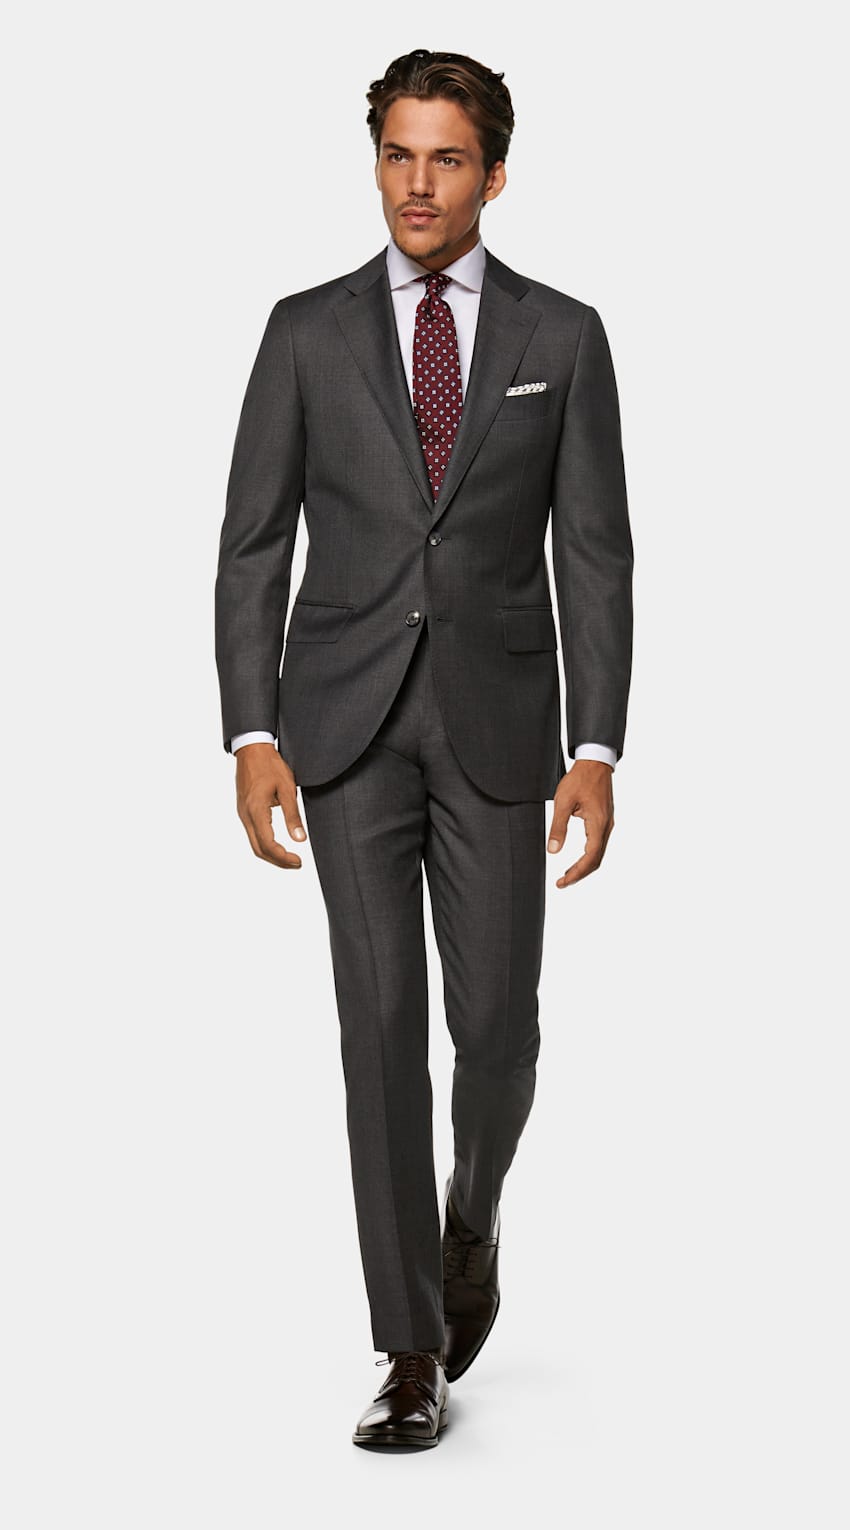 Slate Grey Suit | lupon.gov.ph